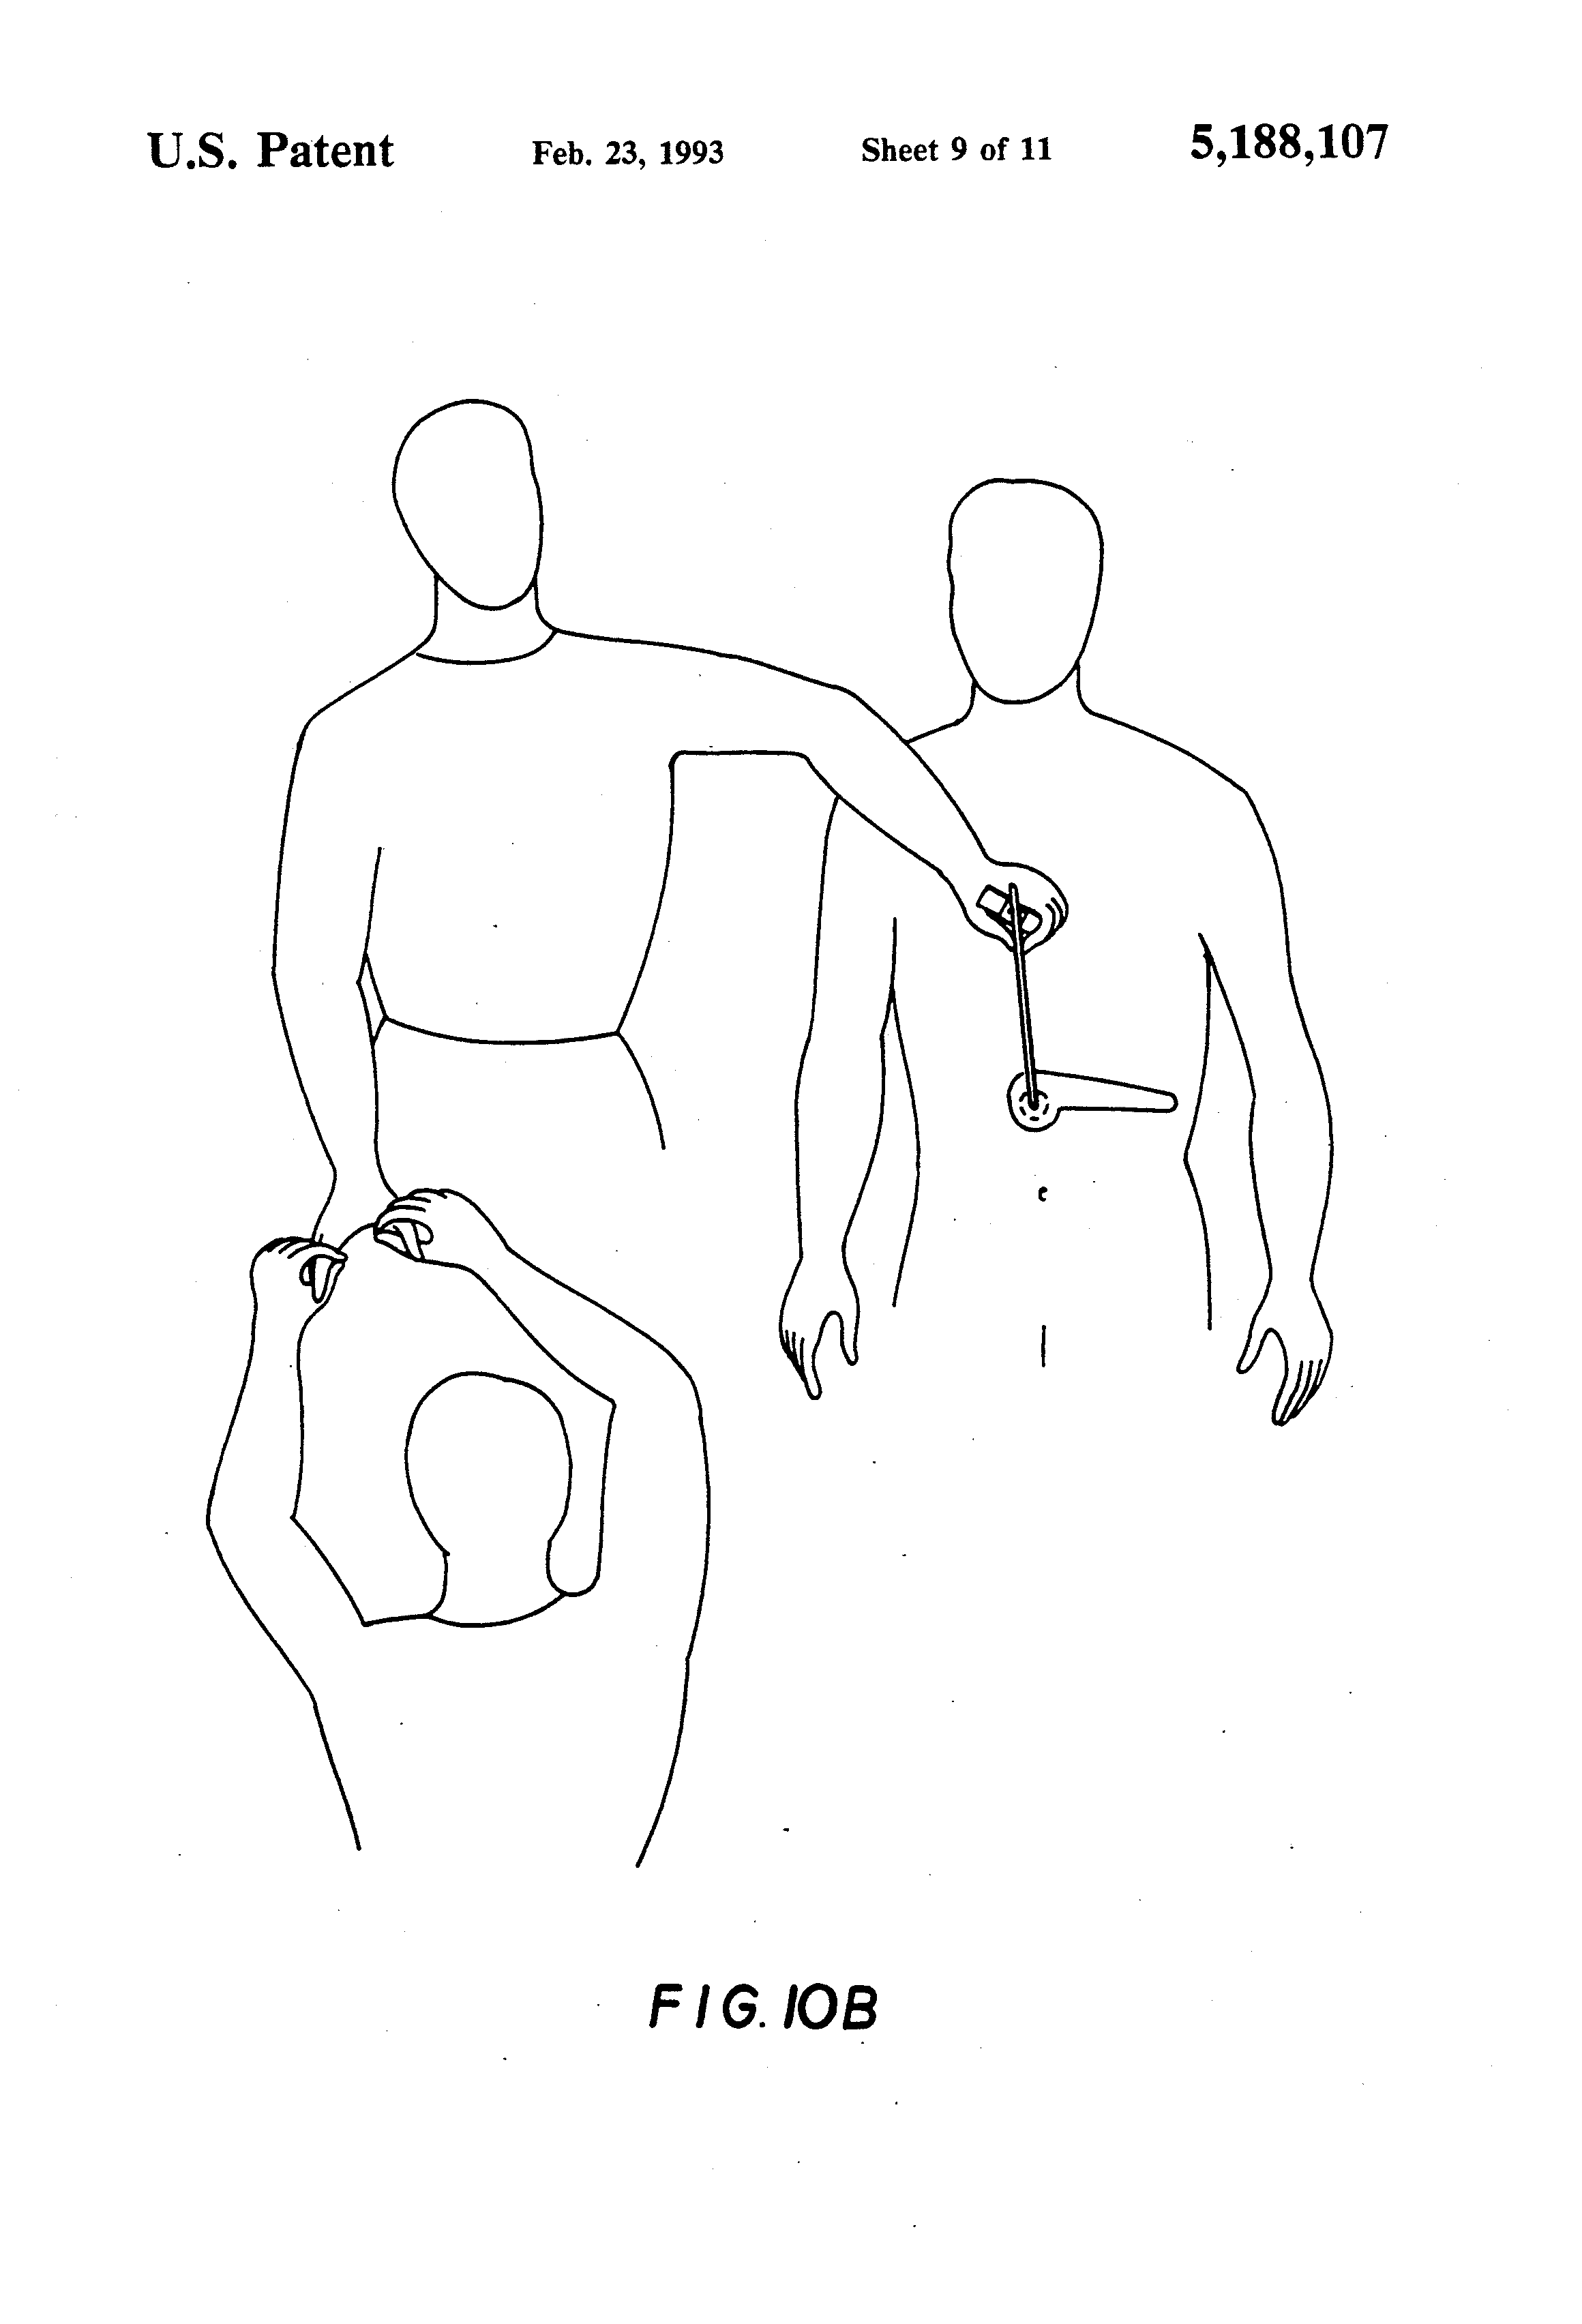 Dibujos ilustrativos del "método diagnóstico" patentado.